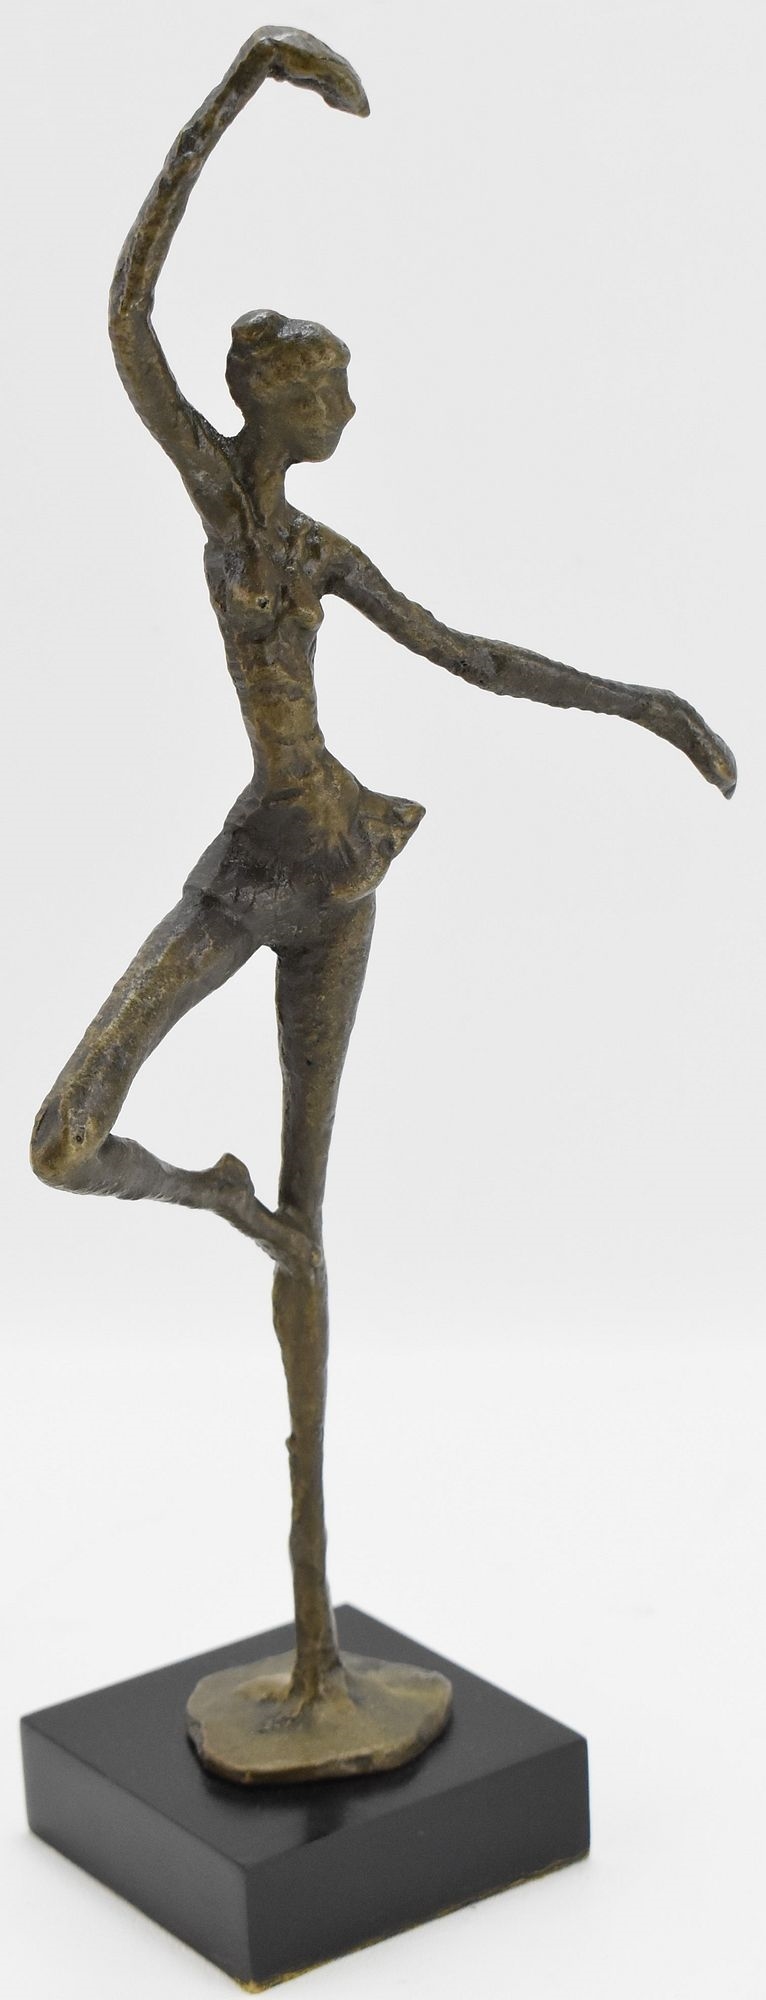 Artwork by Alberto Giacometti, ALBERTO GIACOMETTI BRONZE SCULPTURE COLLECTION, Made of bronze